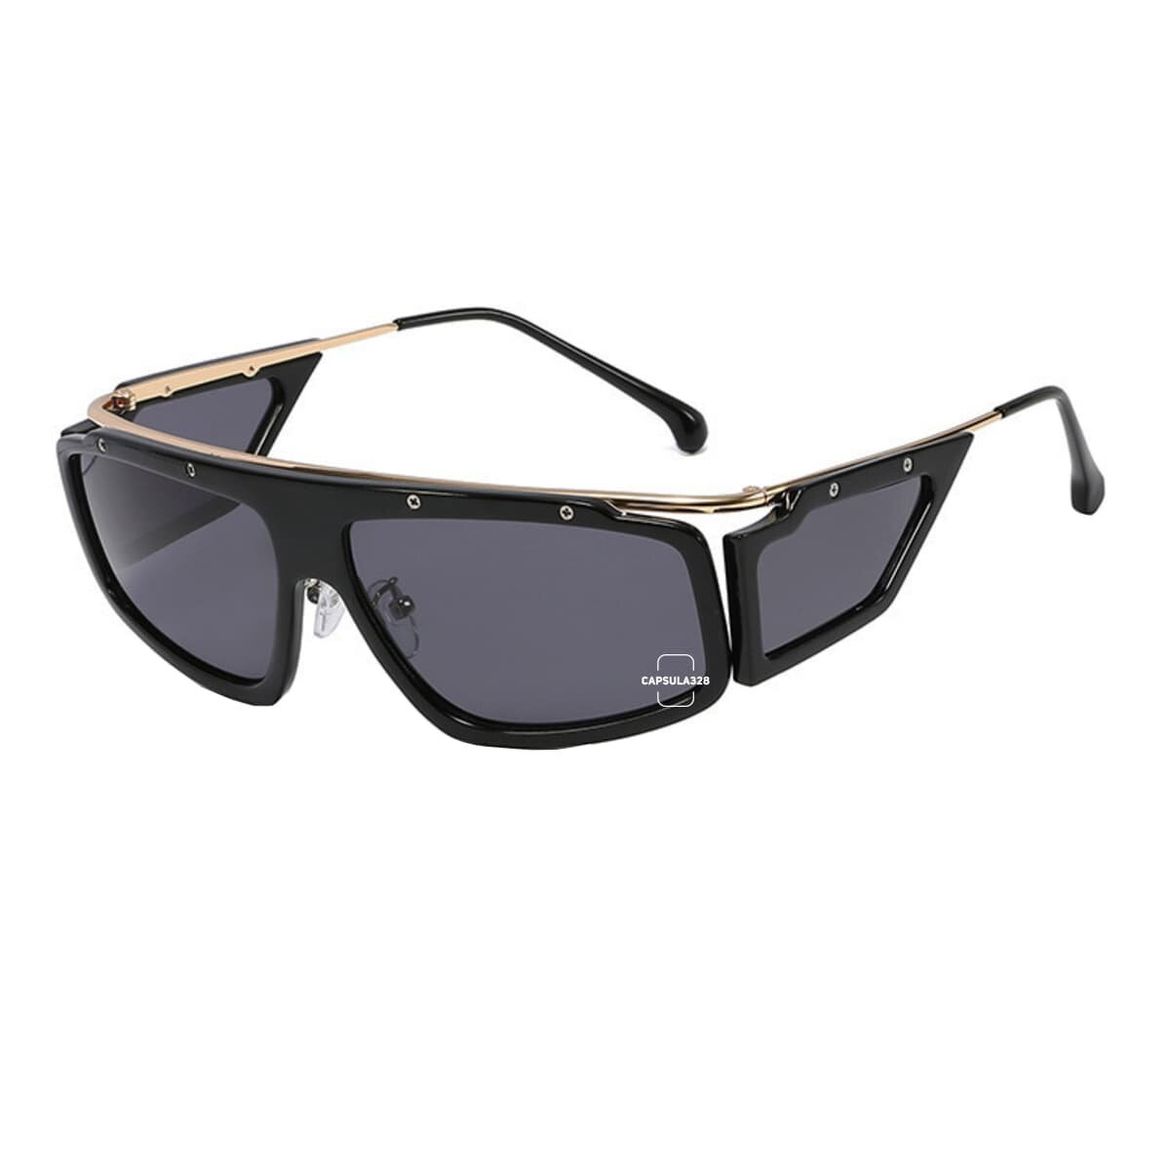 Солнцезащитные очки Hood 2661